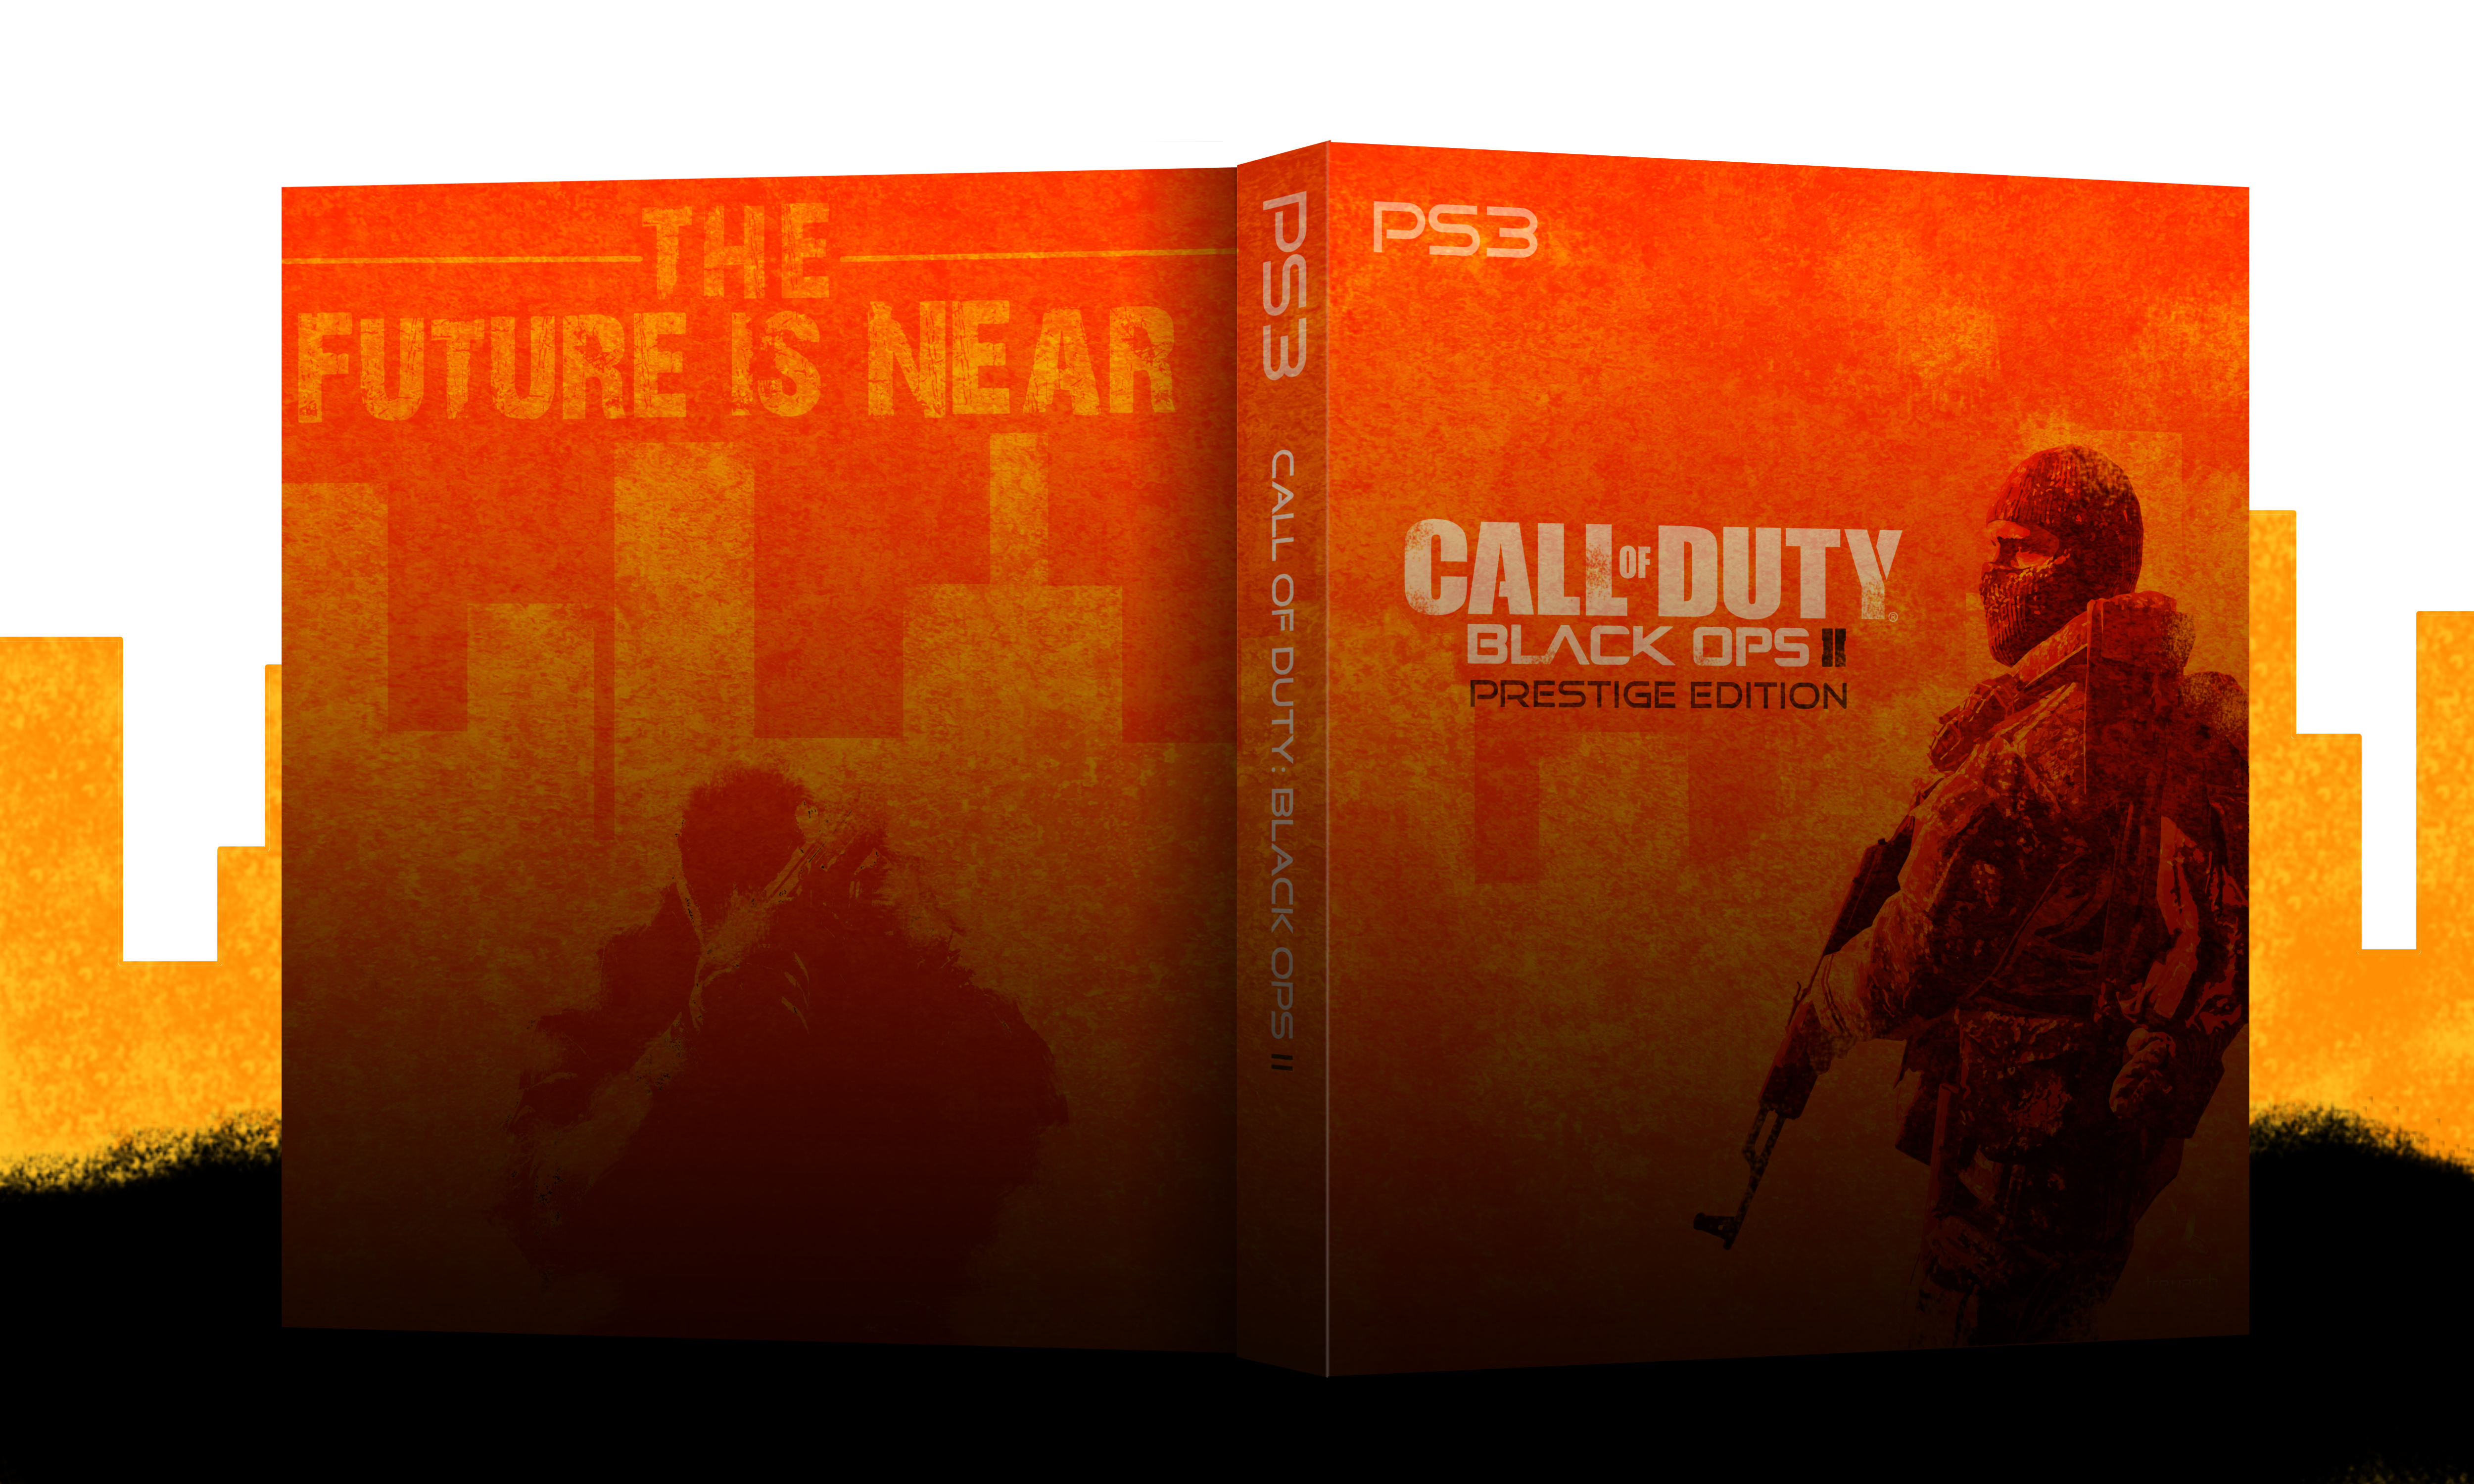 Call of Duty: Black Ops II box cover